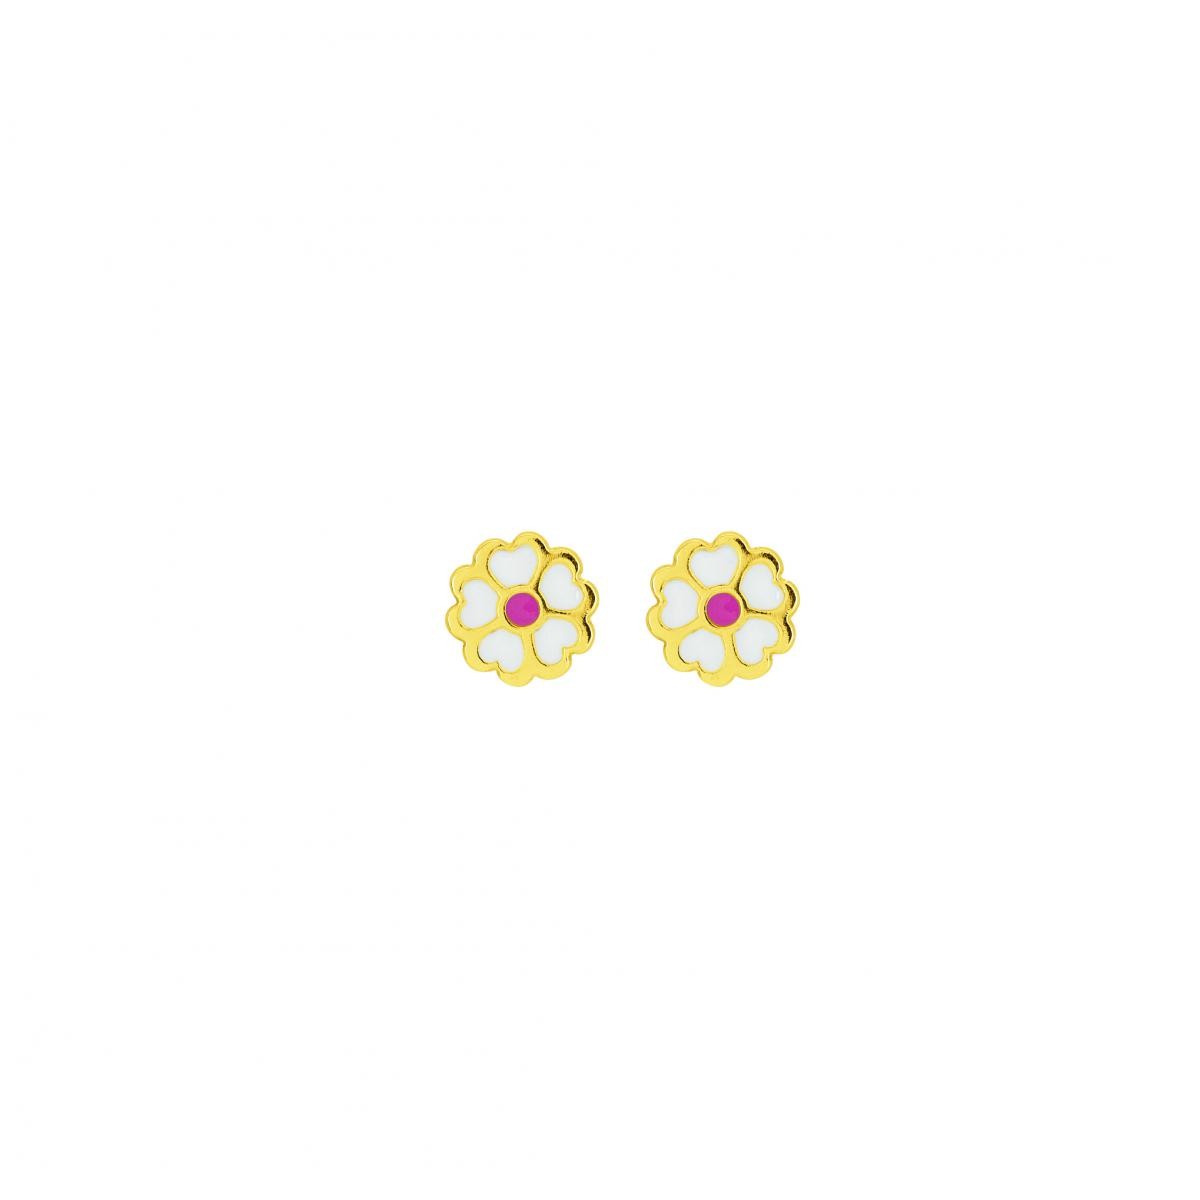 Boucles d'oreilles Fleurs enfant Or 375/1000 jaune laque (9K)